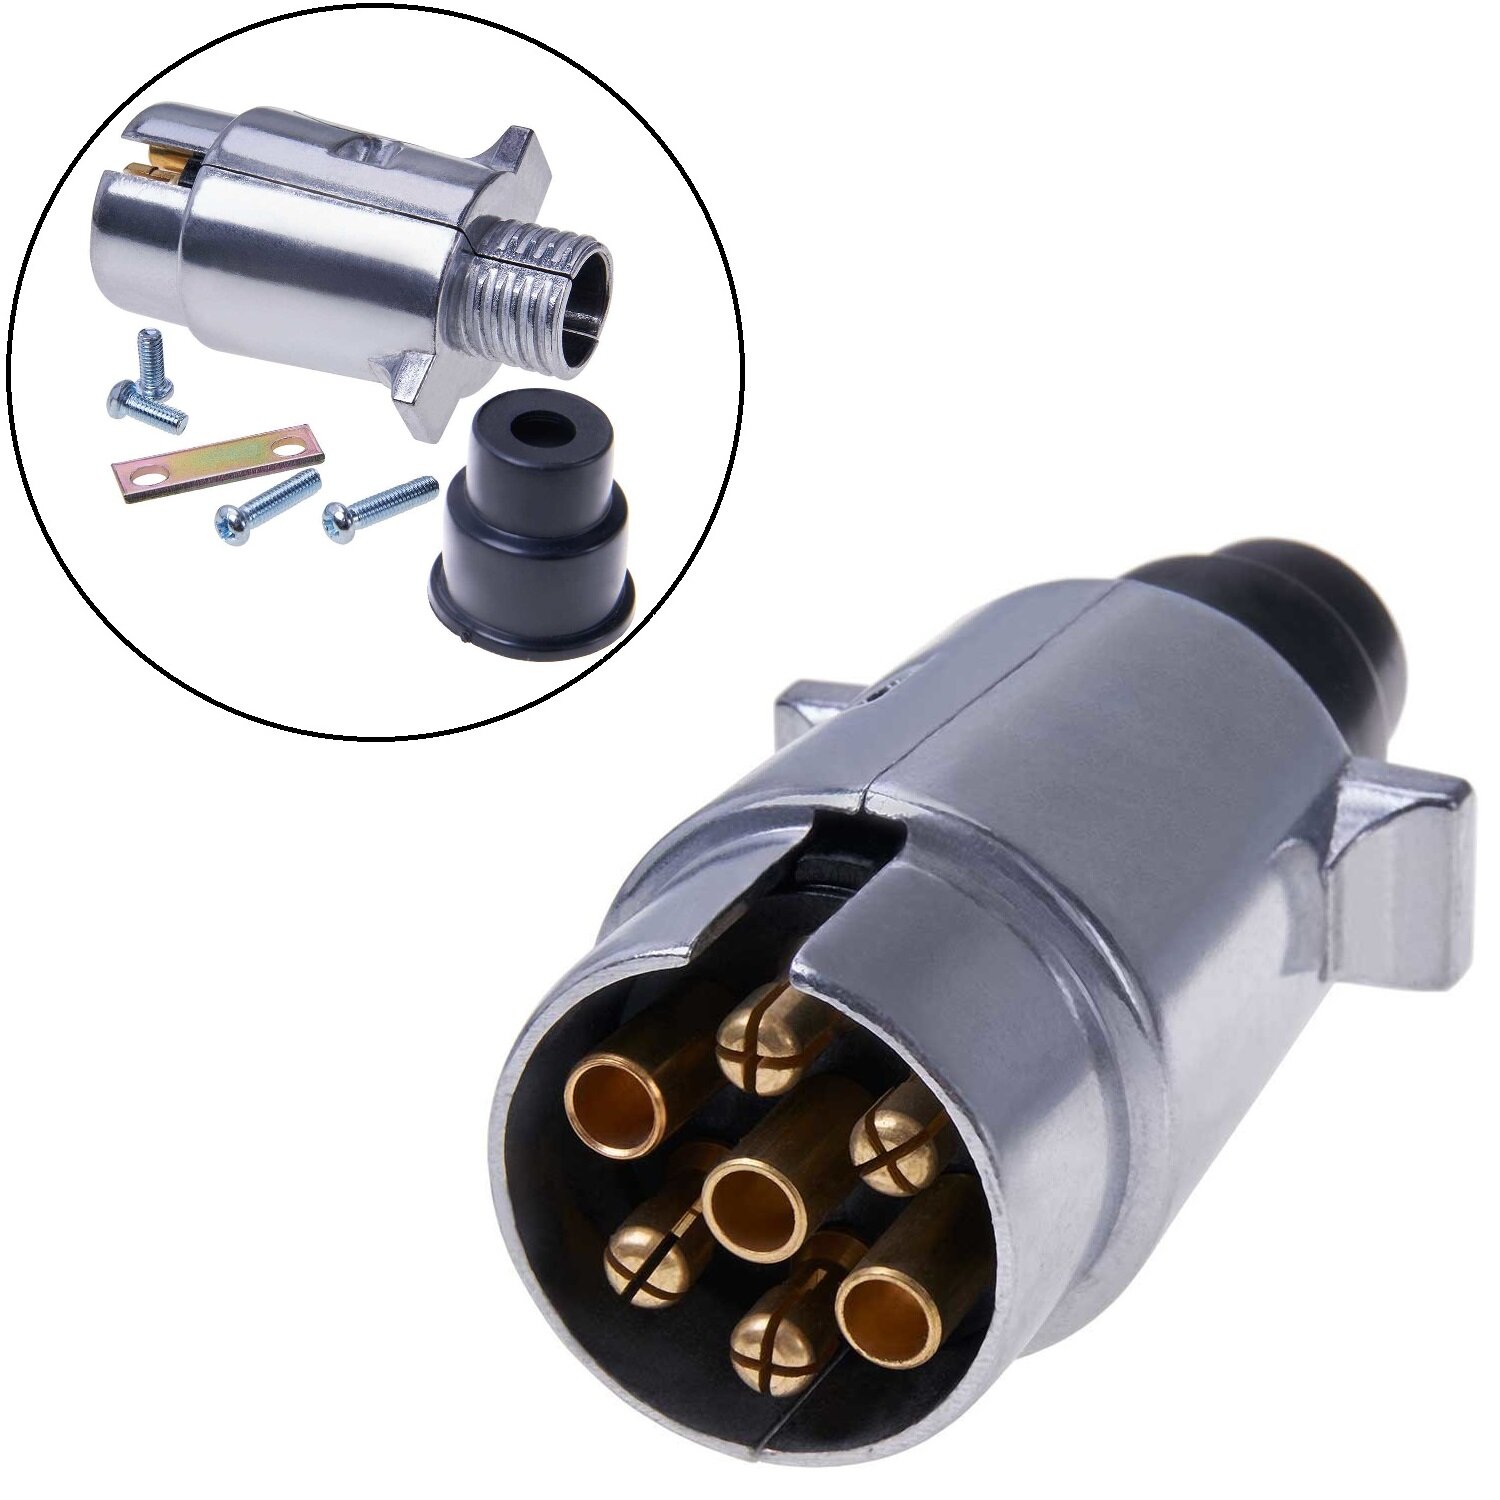 https://www.preiswert-gut.com/media/image/product/8541/lg/anhaengerstecker-7-polig-metall-stecker-12v-an-steckdose-anhaenger-adapter-silber.jpg